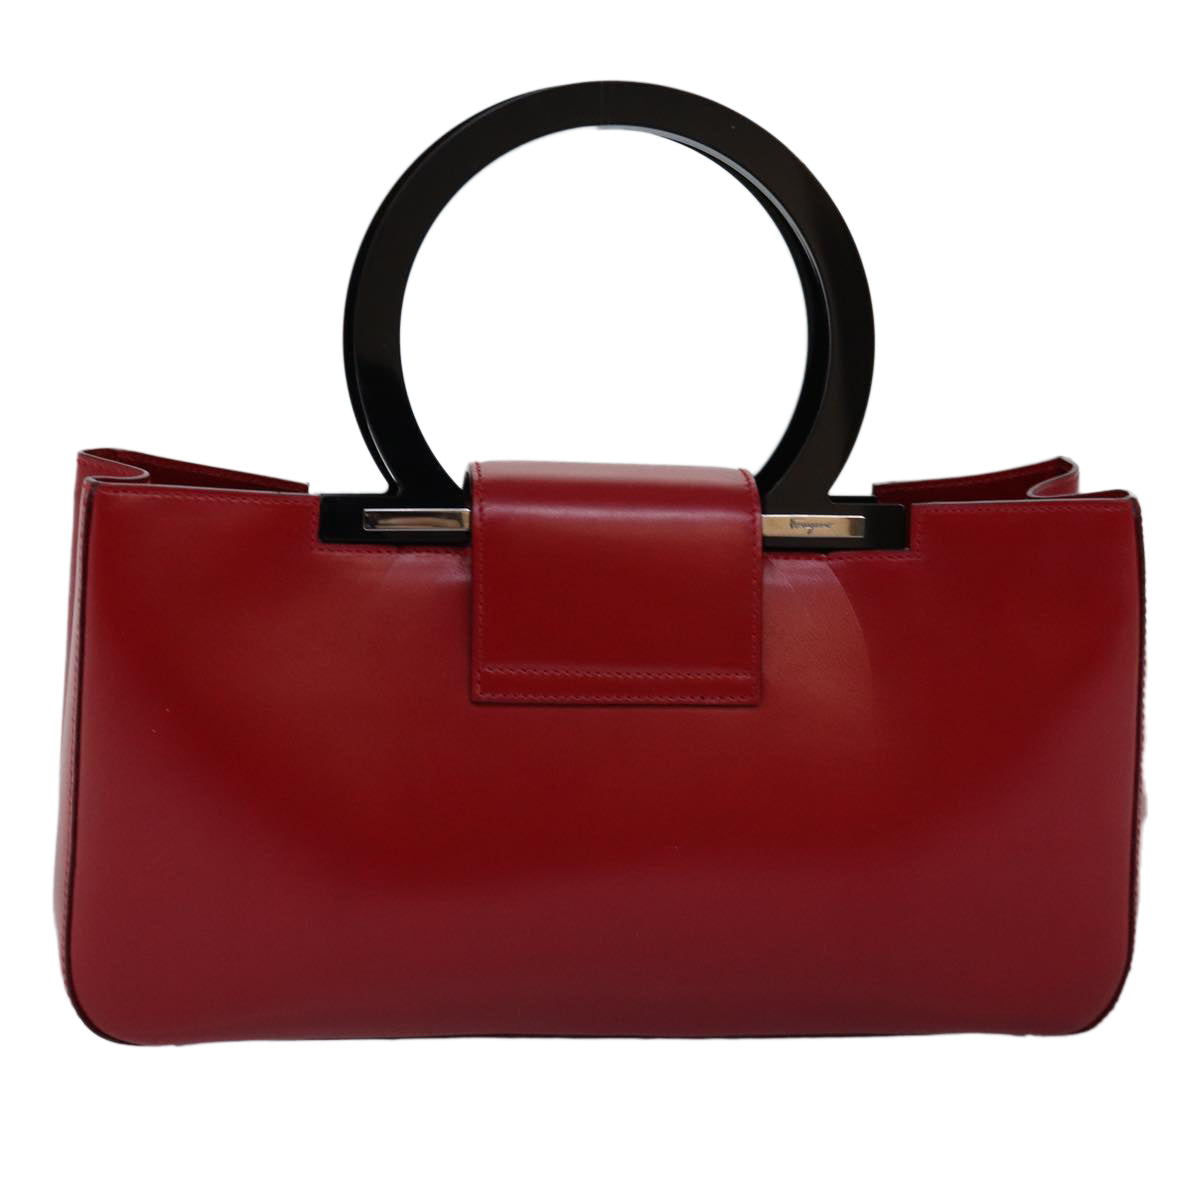 Salvatore Ferragamo Gancini Hand Bag Leather Red Auth 74408 - 0